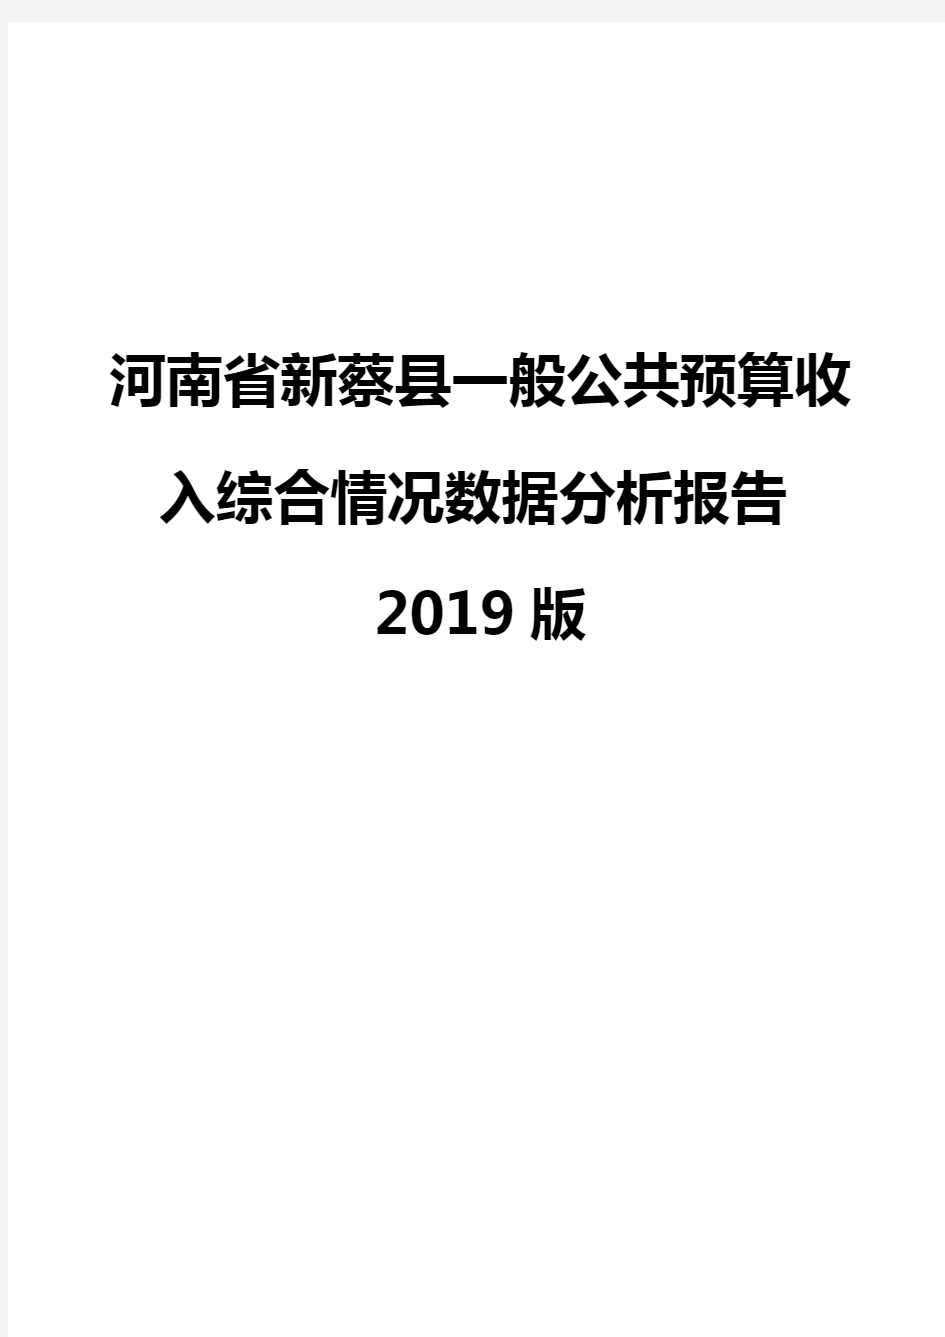 河南省新蔡县一般公共预算收入综合情况数据分析报告2019版